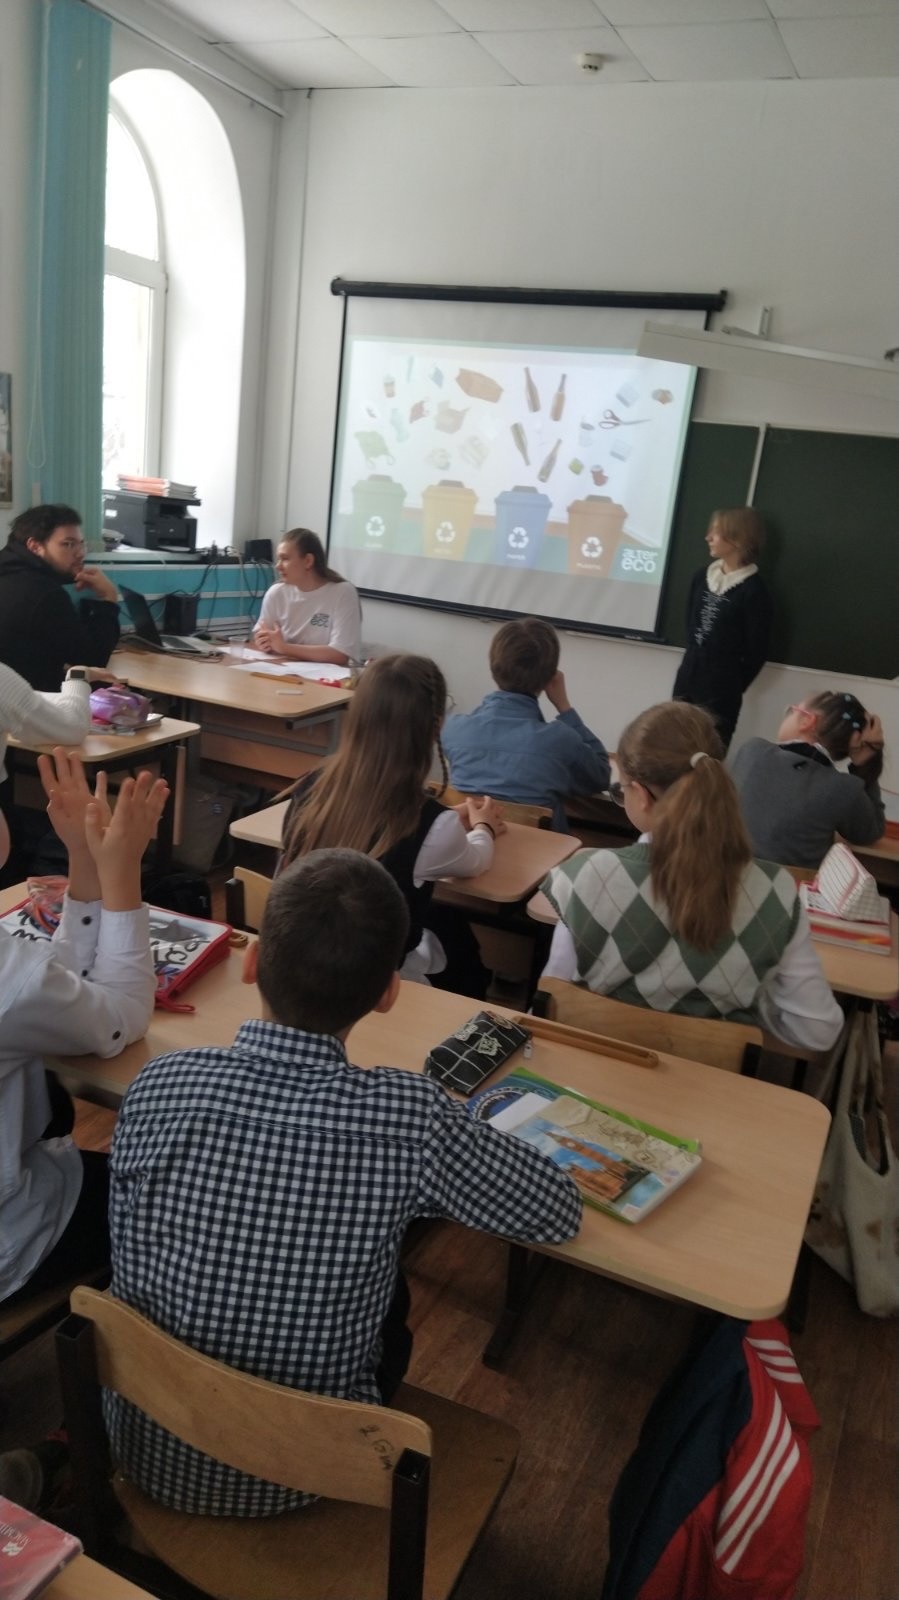 Студенческая организация МГПУ Alter Eco проводит уроки экологической направленности на английском языке с ребятами 5-8 классов.